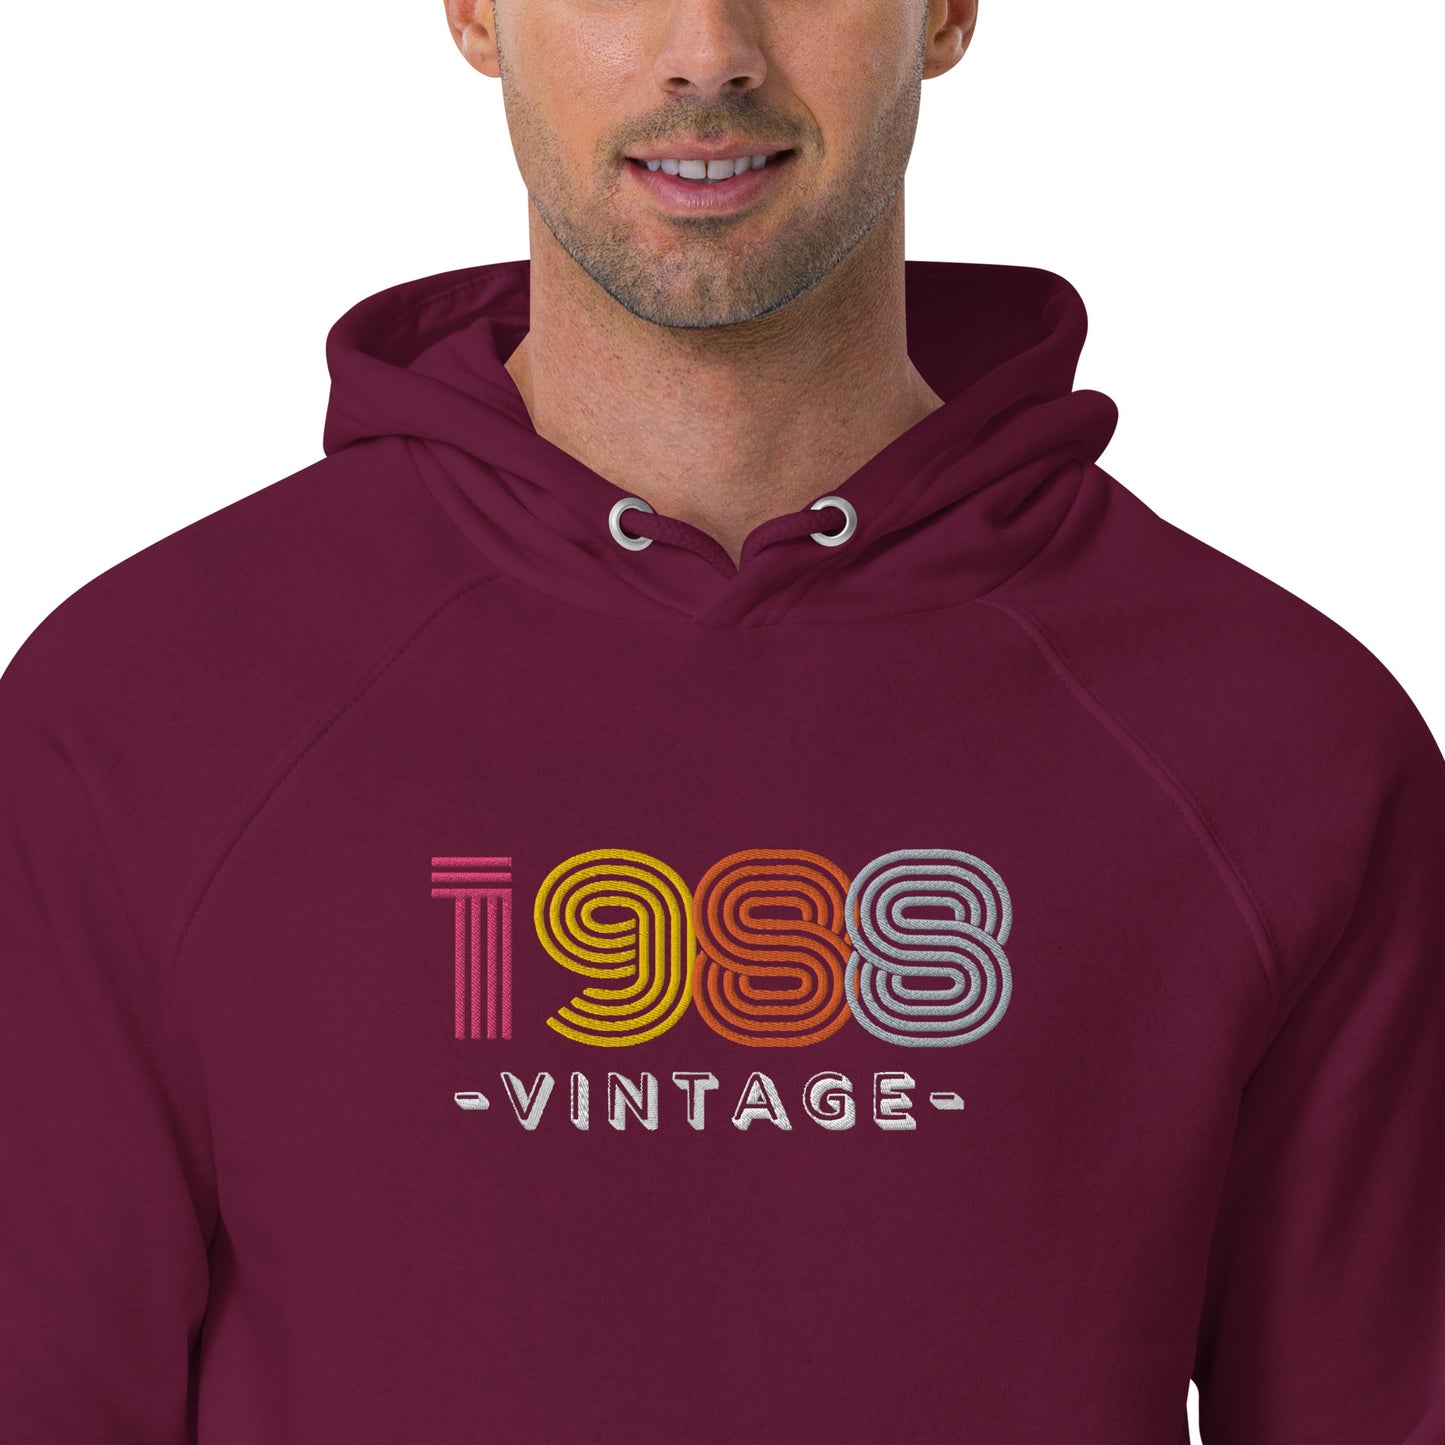 0-A-00 1988 vintage Unisex eco raglan hoodie